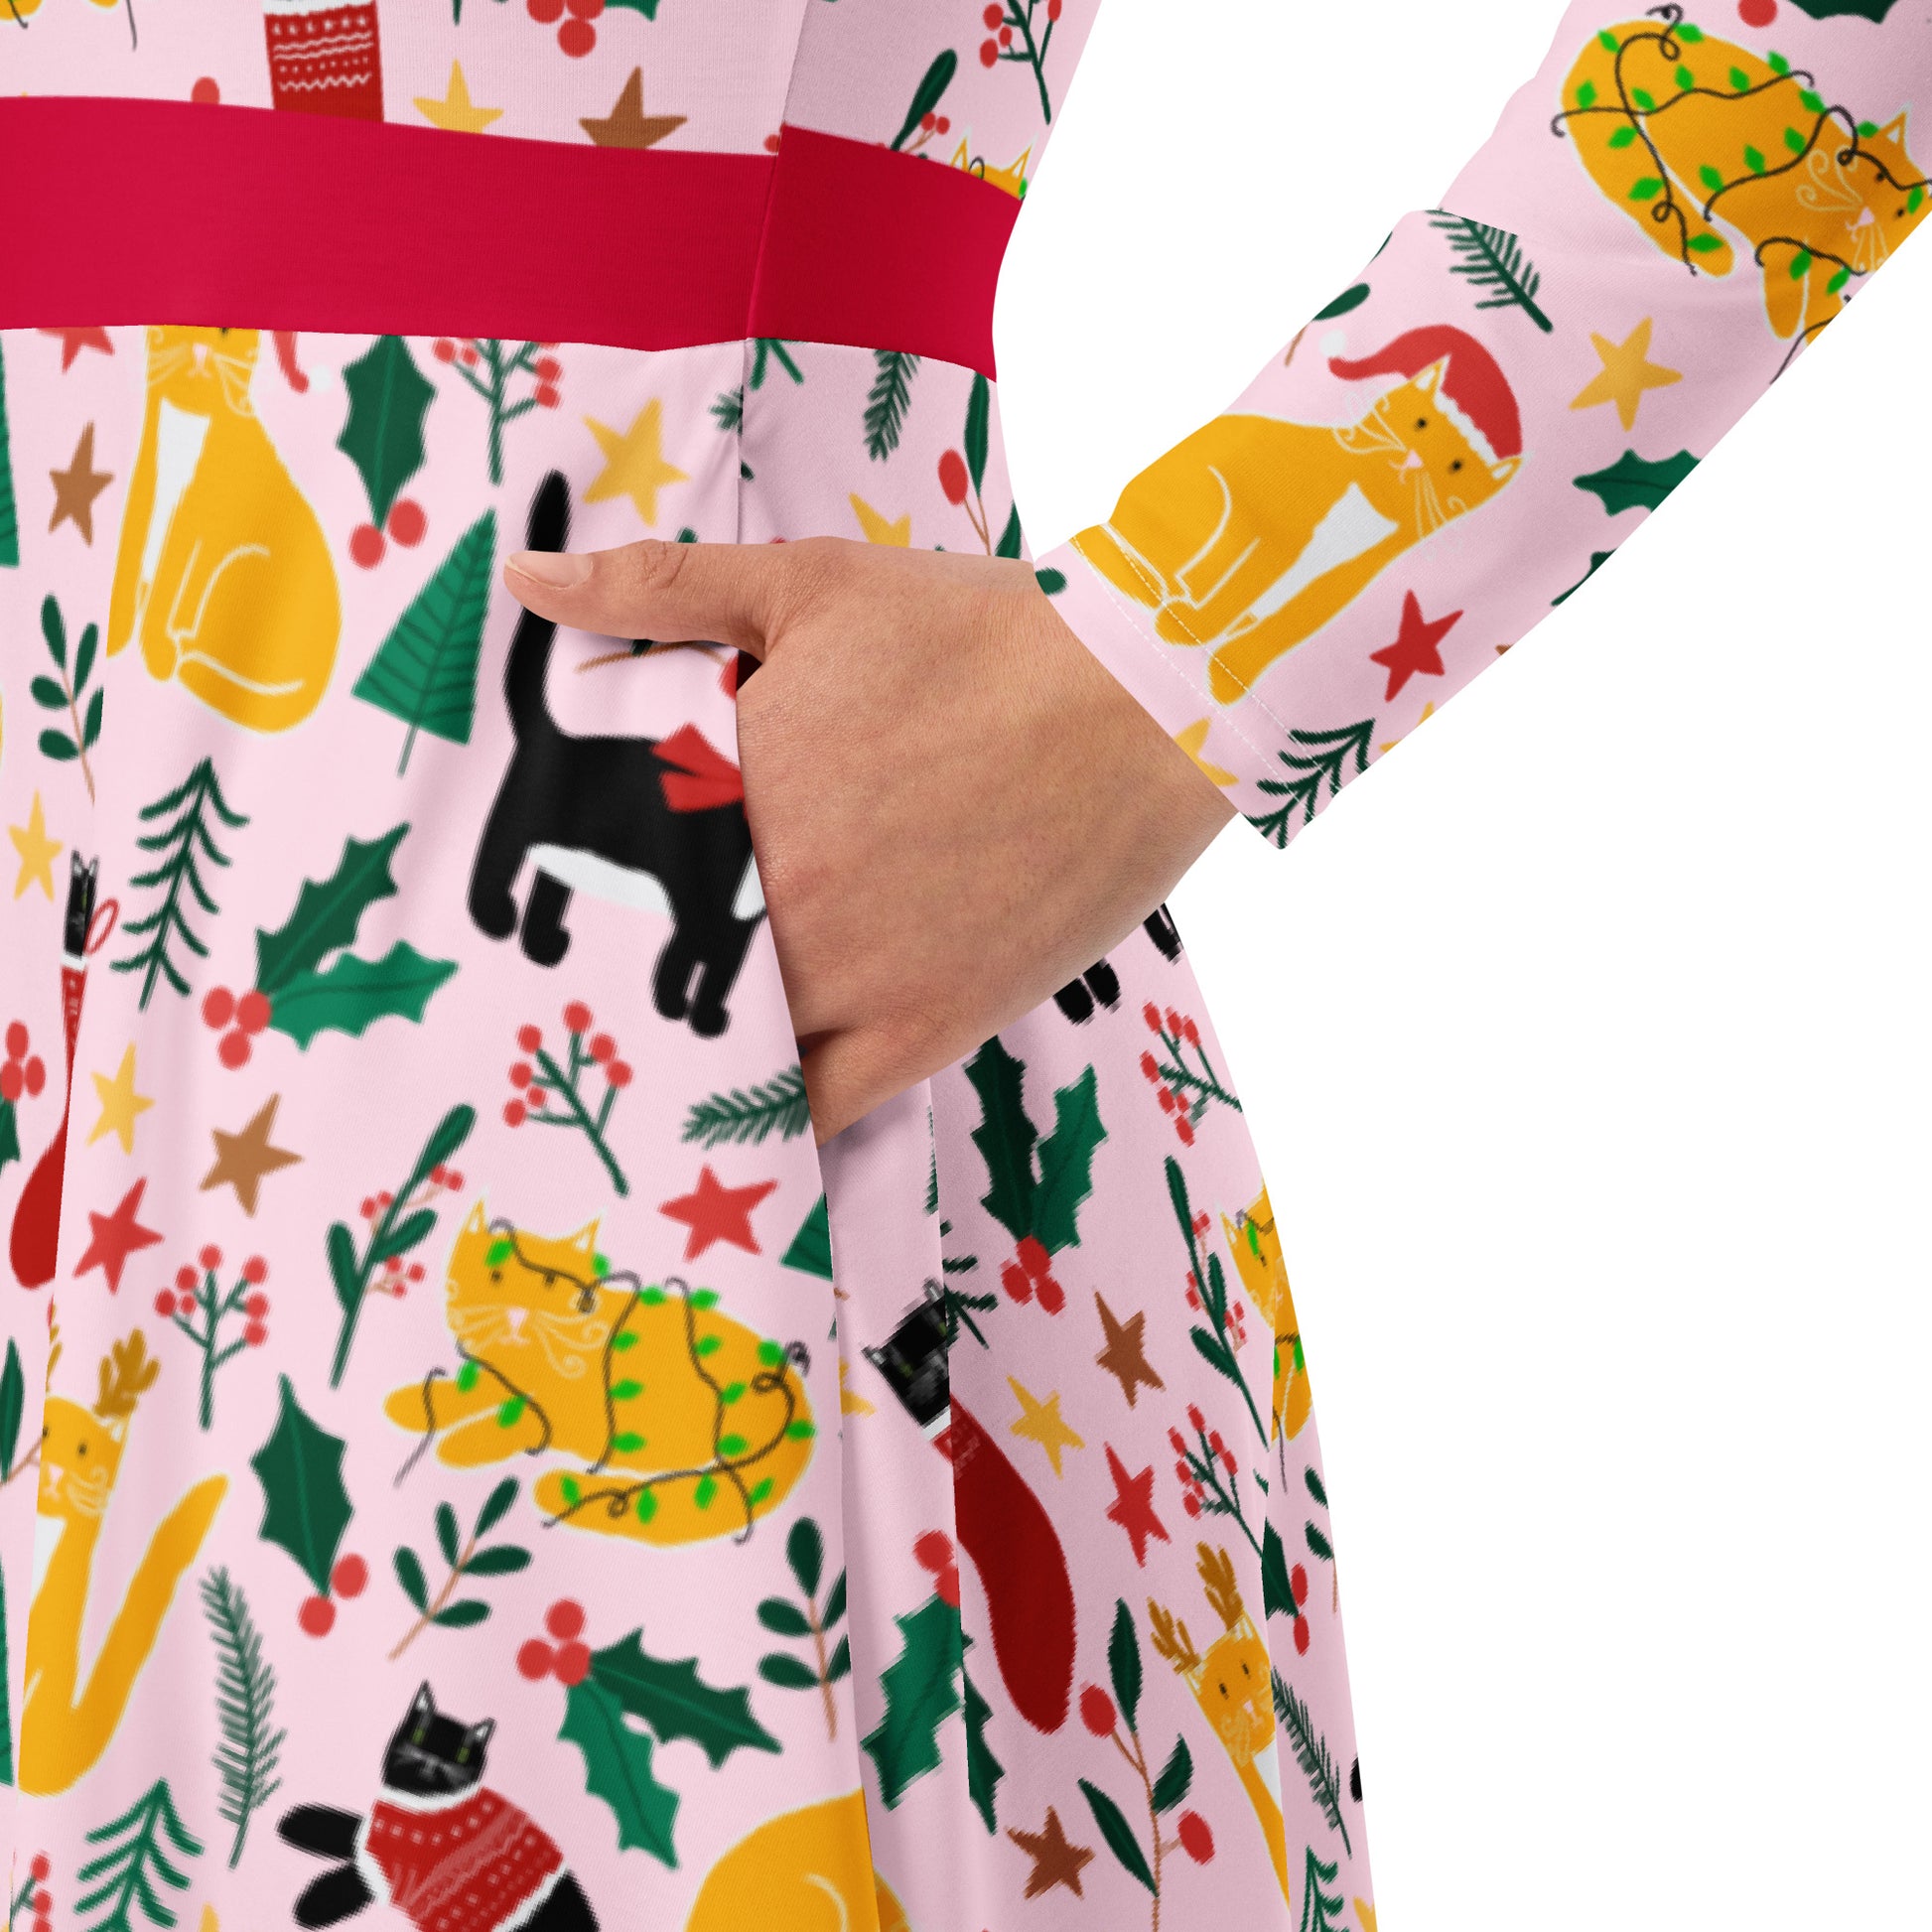 English Alt Text: "Joulukissat Long Sleeve Dress with Pockets - Finnish Cat Pattern - Designed in Turku, Finland by Print N Stuff." Finnish Alt Text: "Joulukissat Pitkähihainen Mekko taskuilla - Suomalainen kissakuosi - Suunniteltu Turussa, Suomessa Print N Stuffin toimesta."